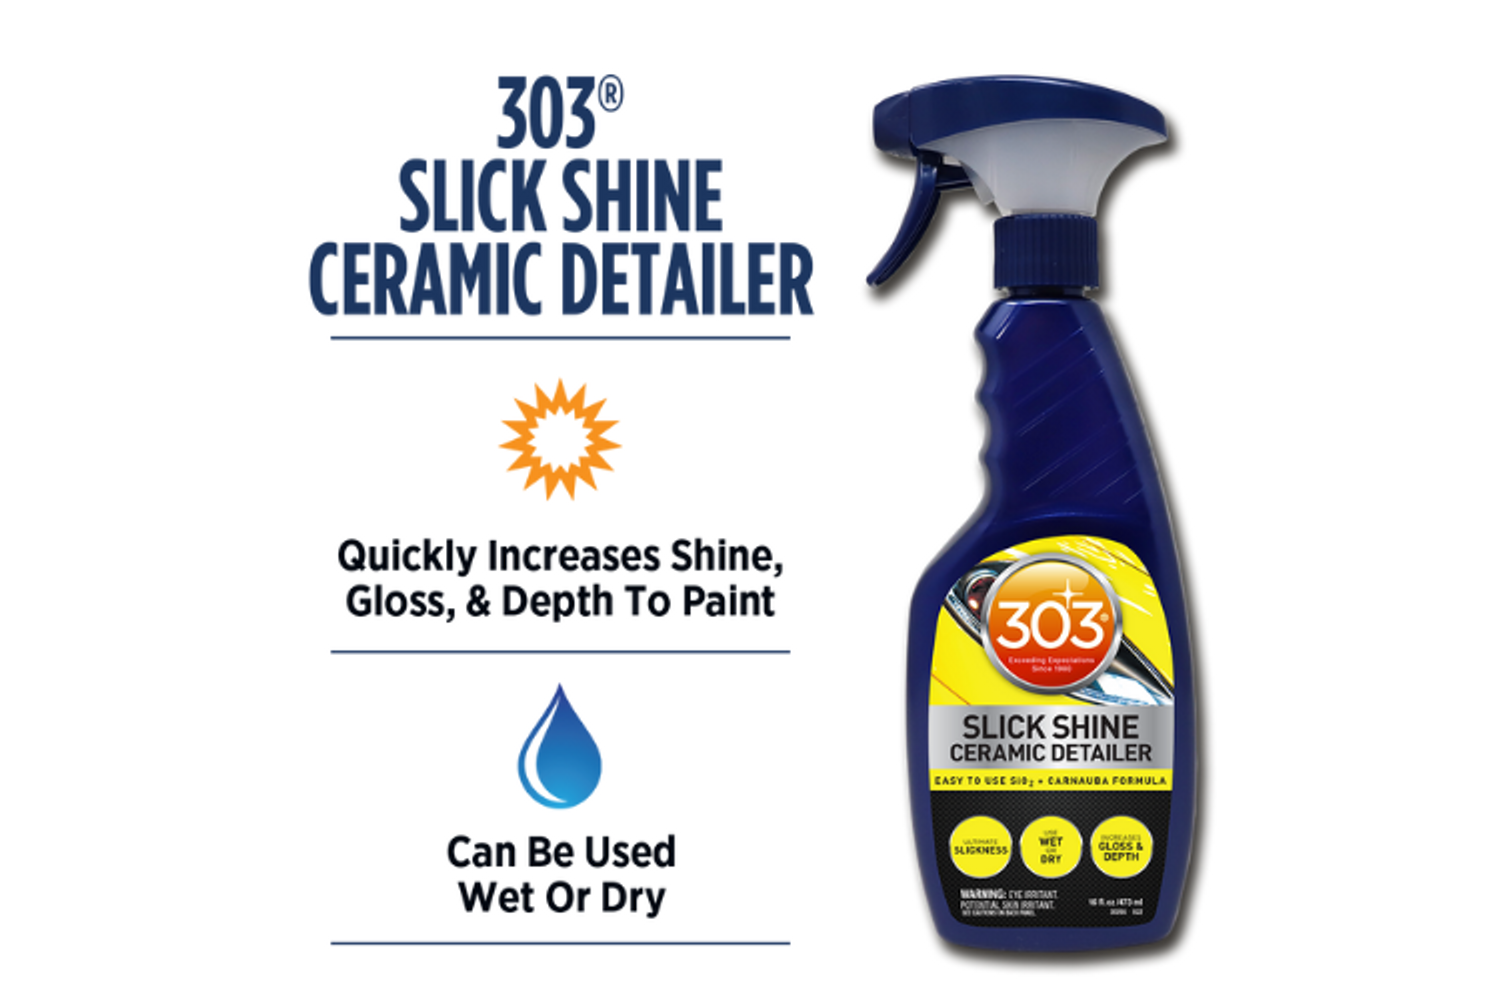 303 Slick Shine Ceramic Detailer 16oz